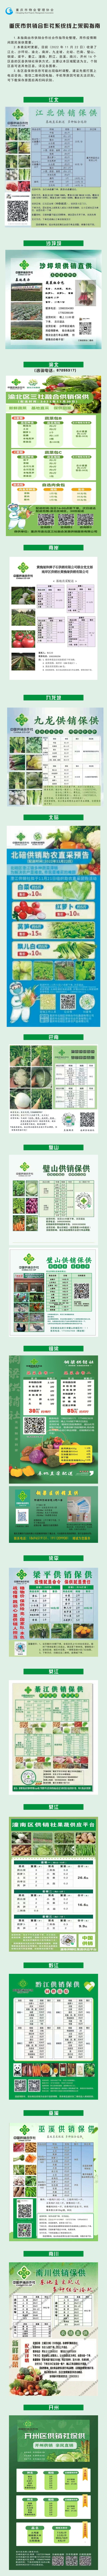 重庆市供销合作社系统线上采购指南.jpg